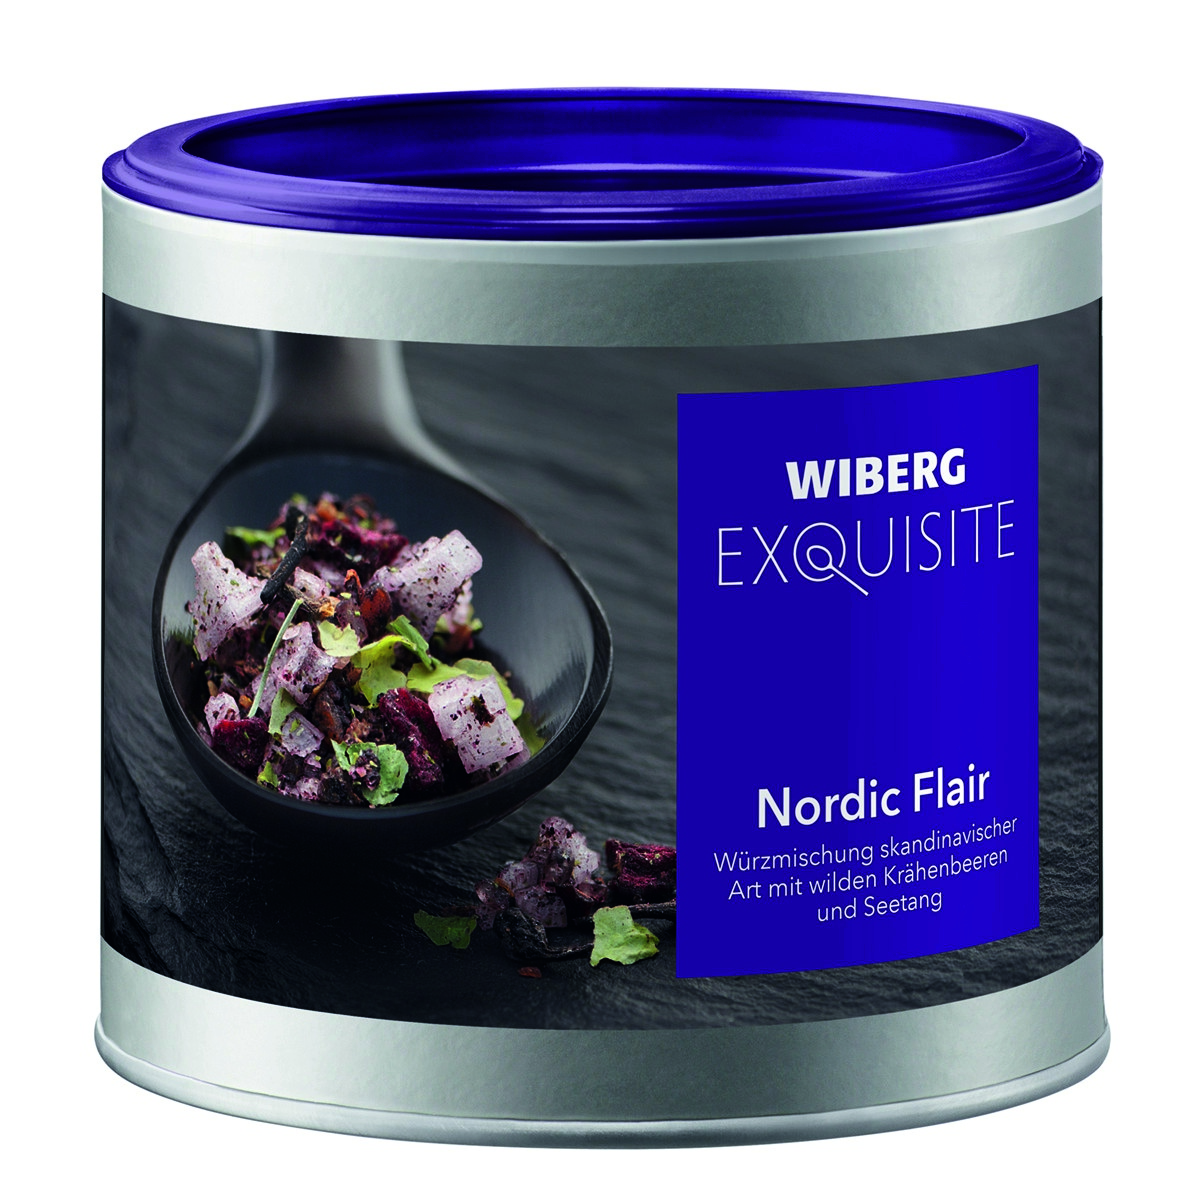 Wiberg Exquisite Nordic Flair